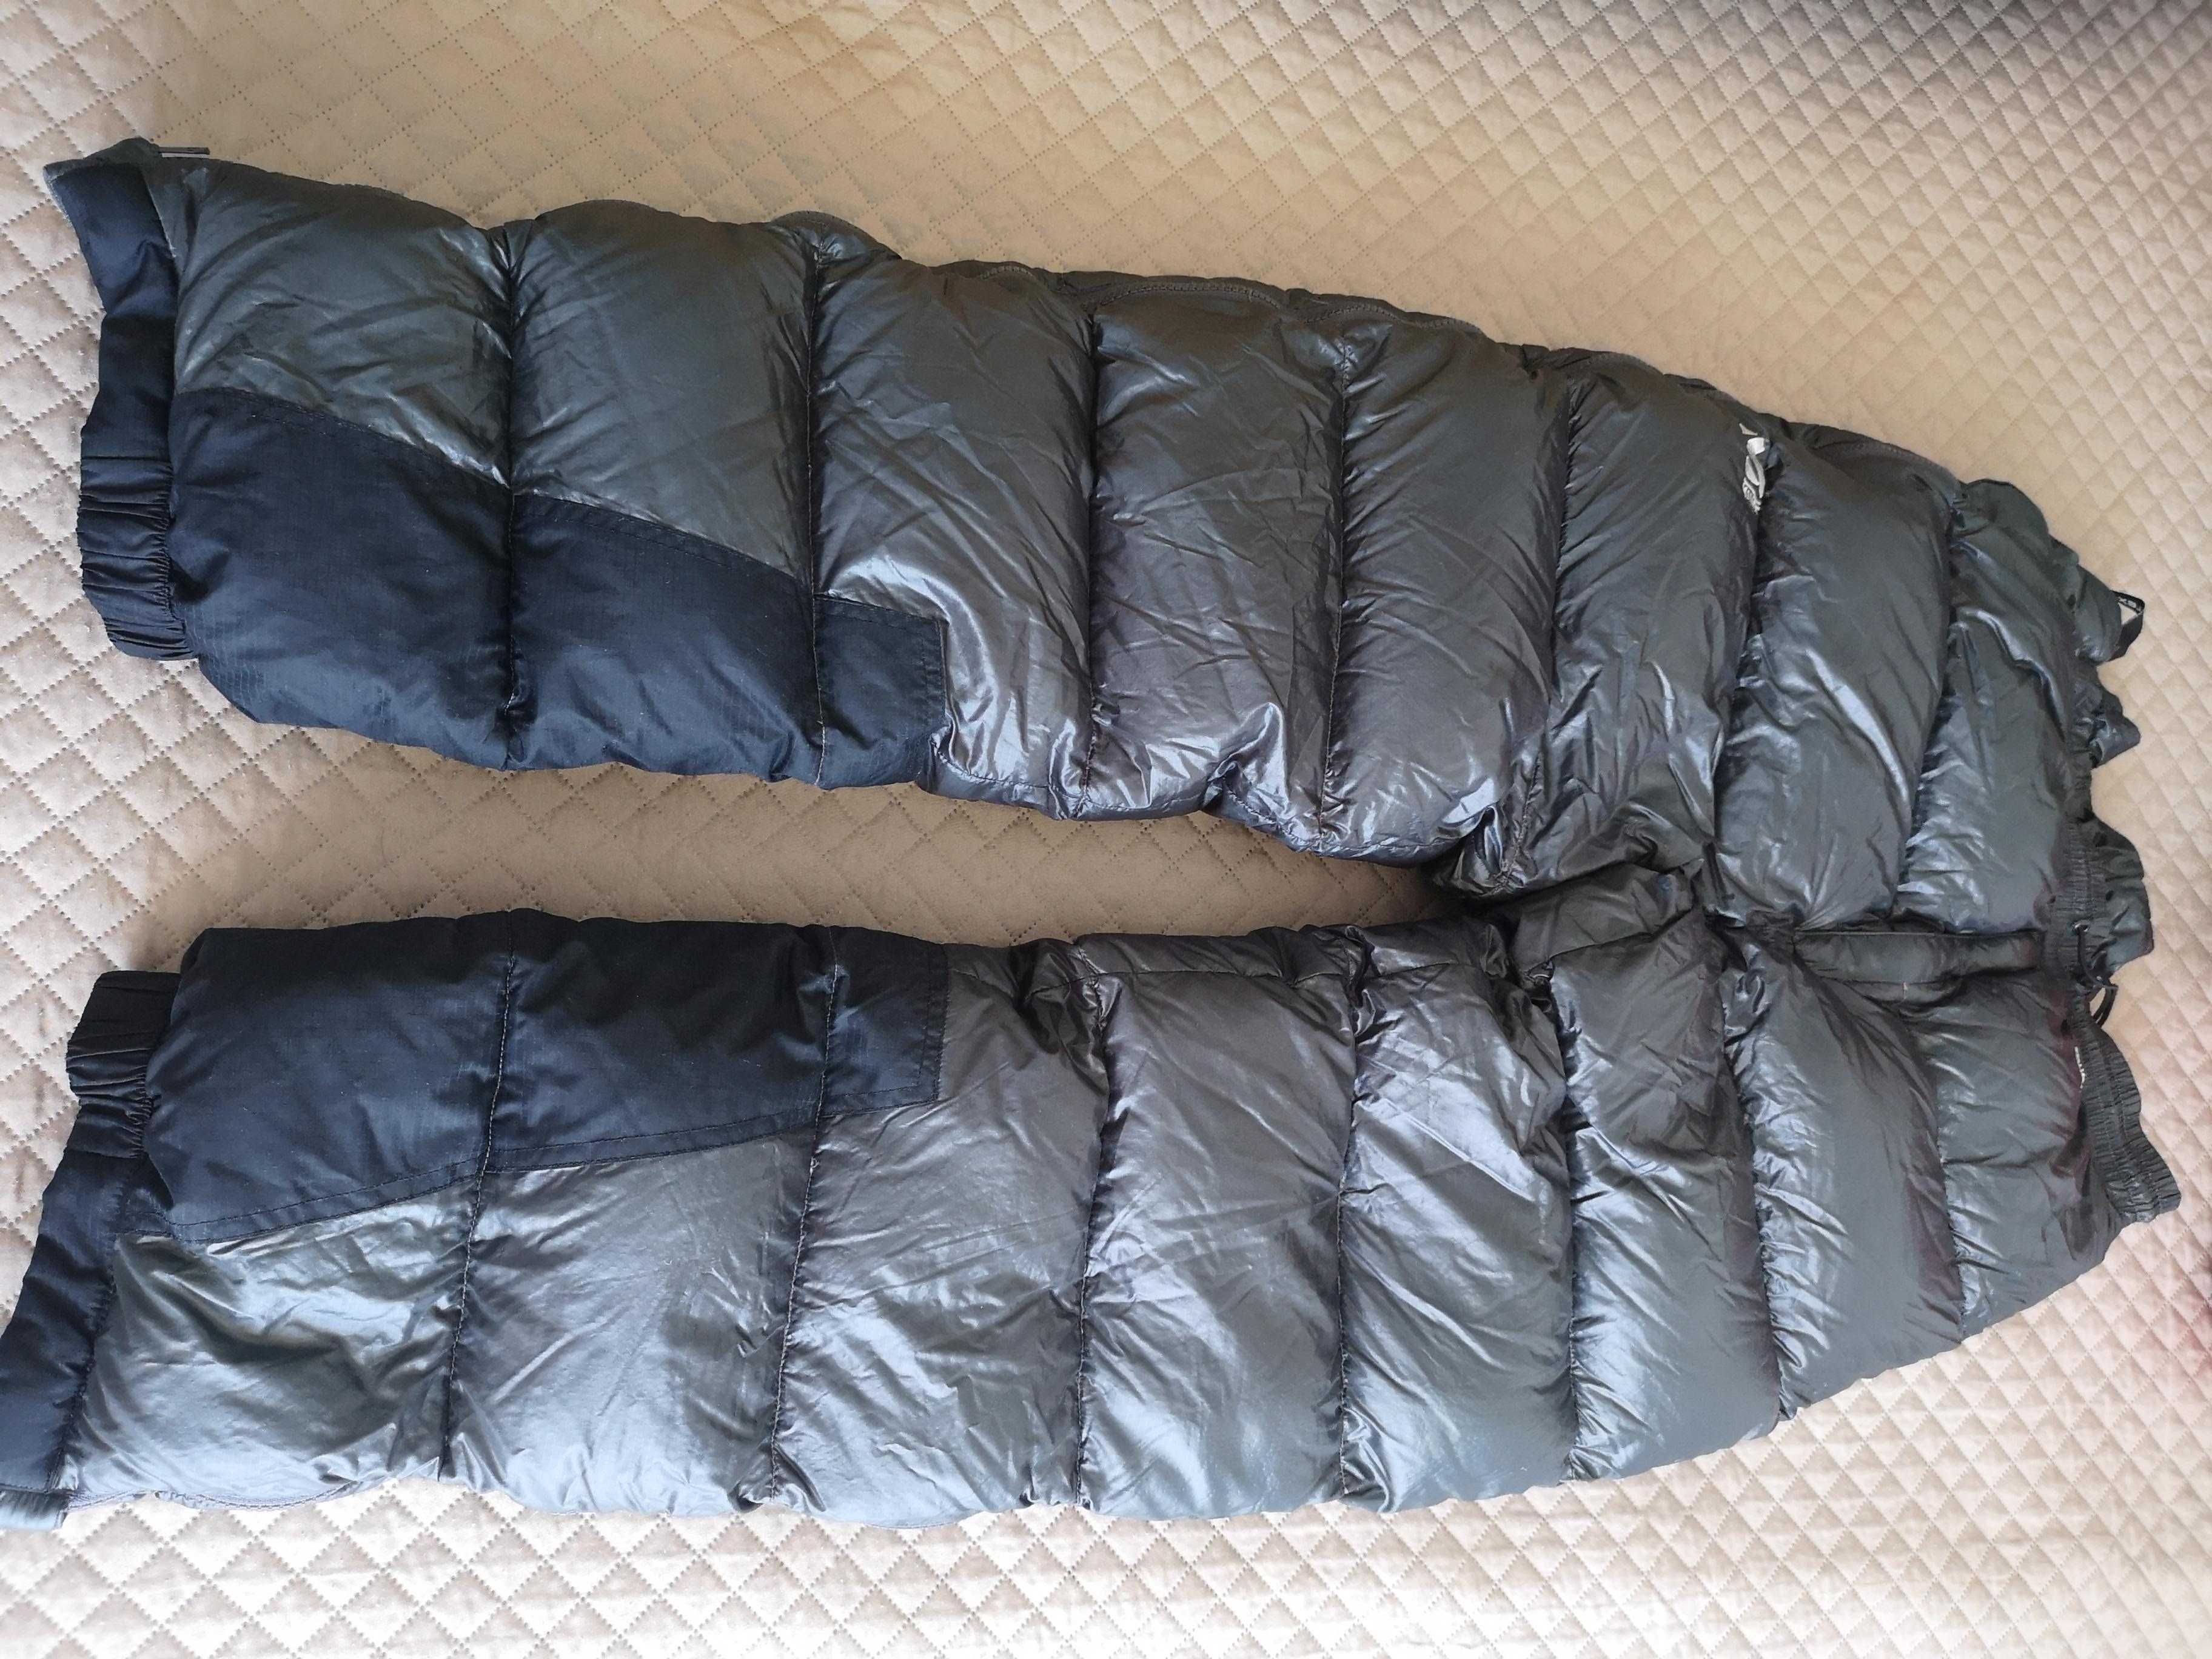 Alpinismo: saco cama, calças e patucos de penas, luvas primaloft